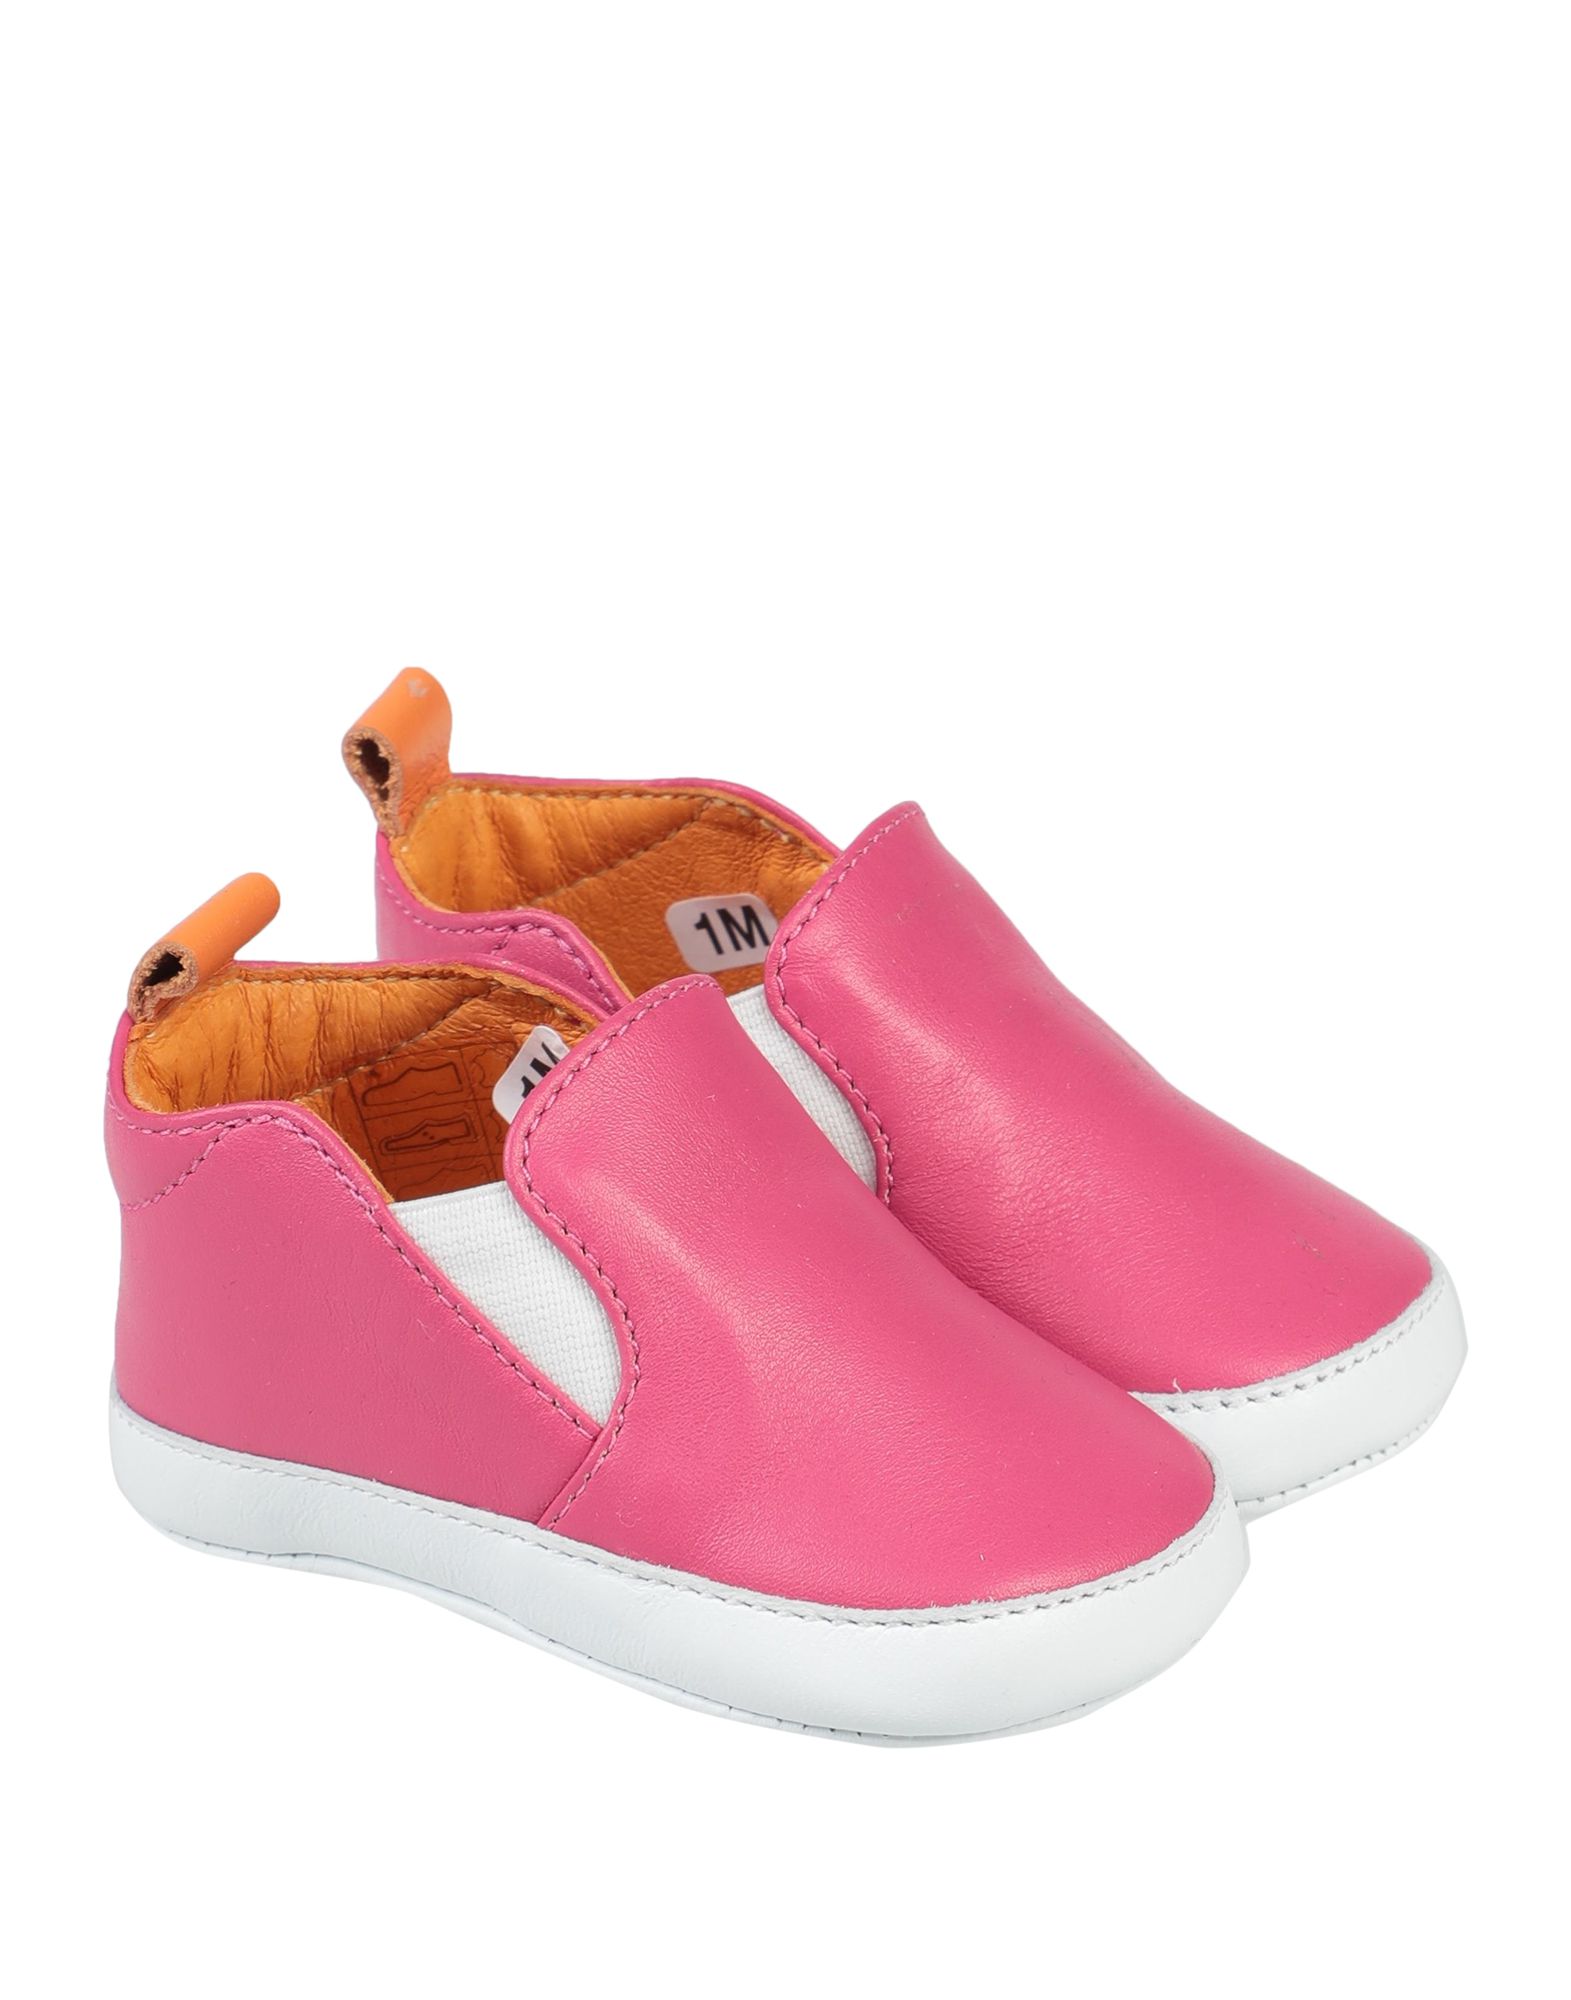 Emilio Pucci Kids' Newborn Shoes In Fuchsia